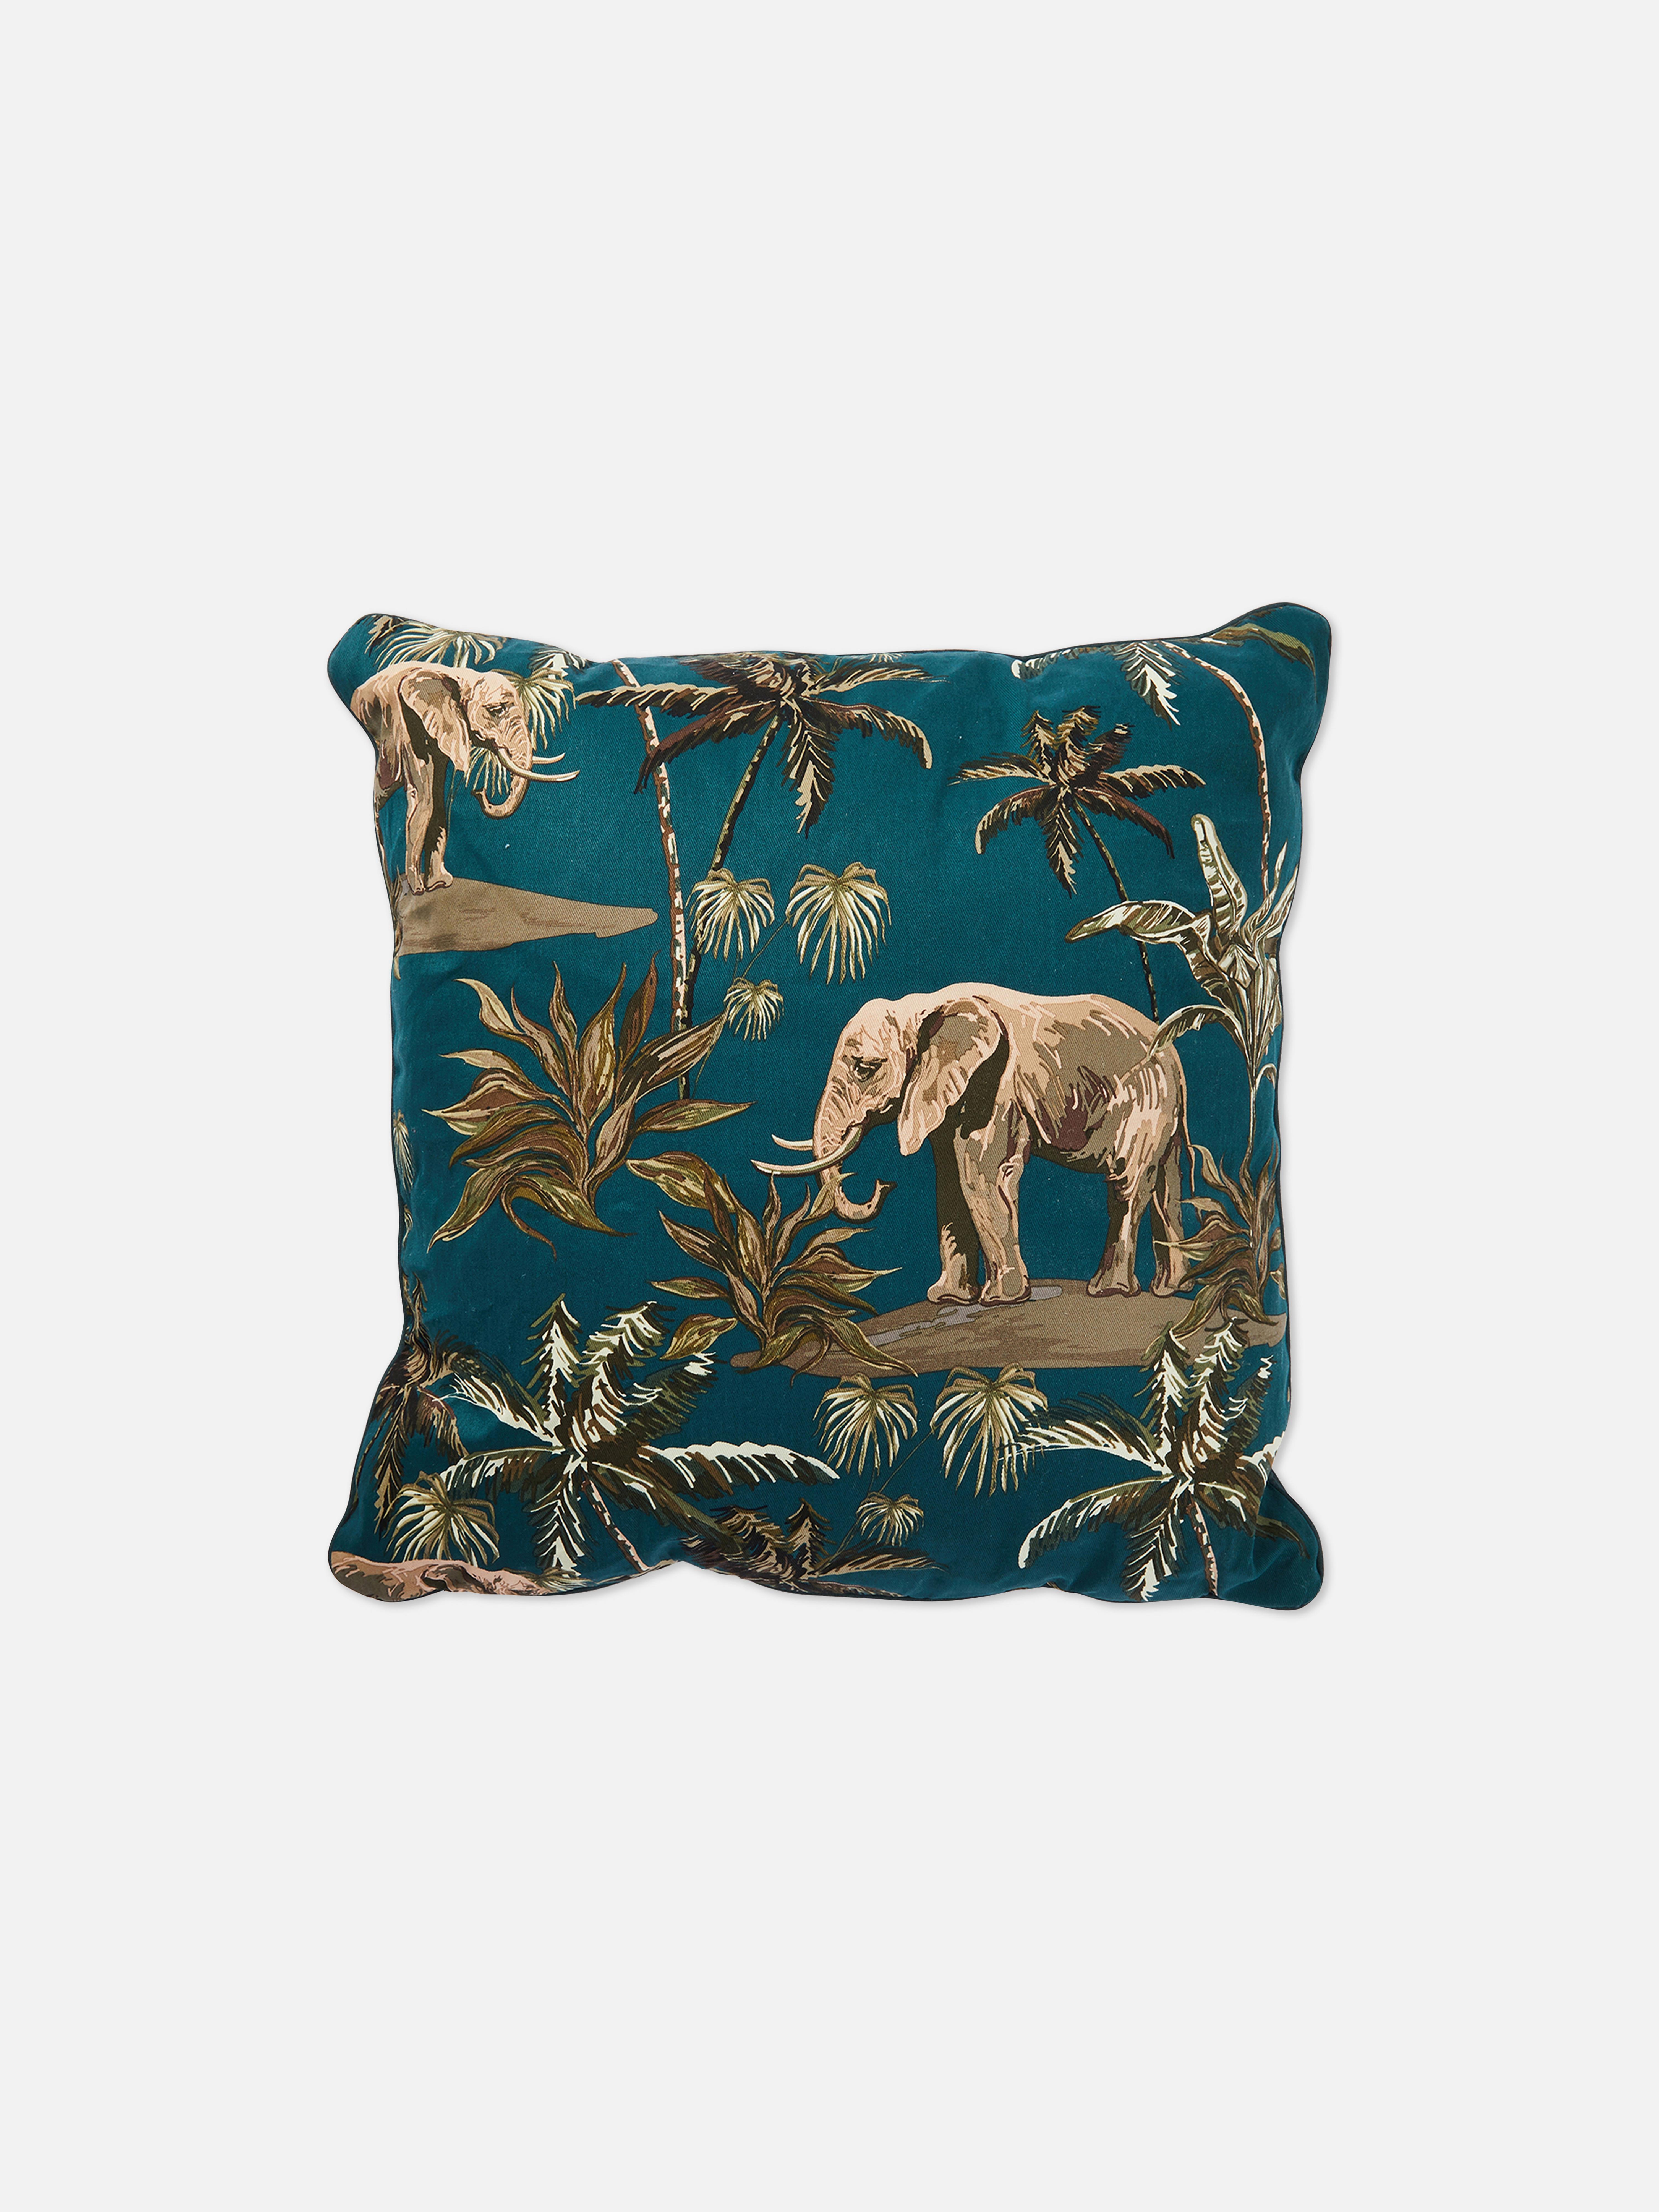 Elephant Cushion Cover 45cm x 45cm